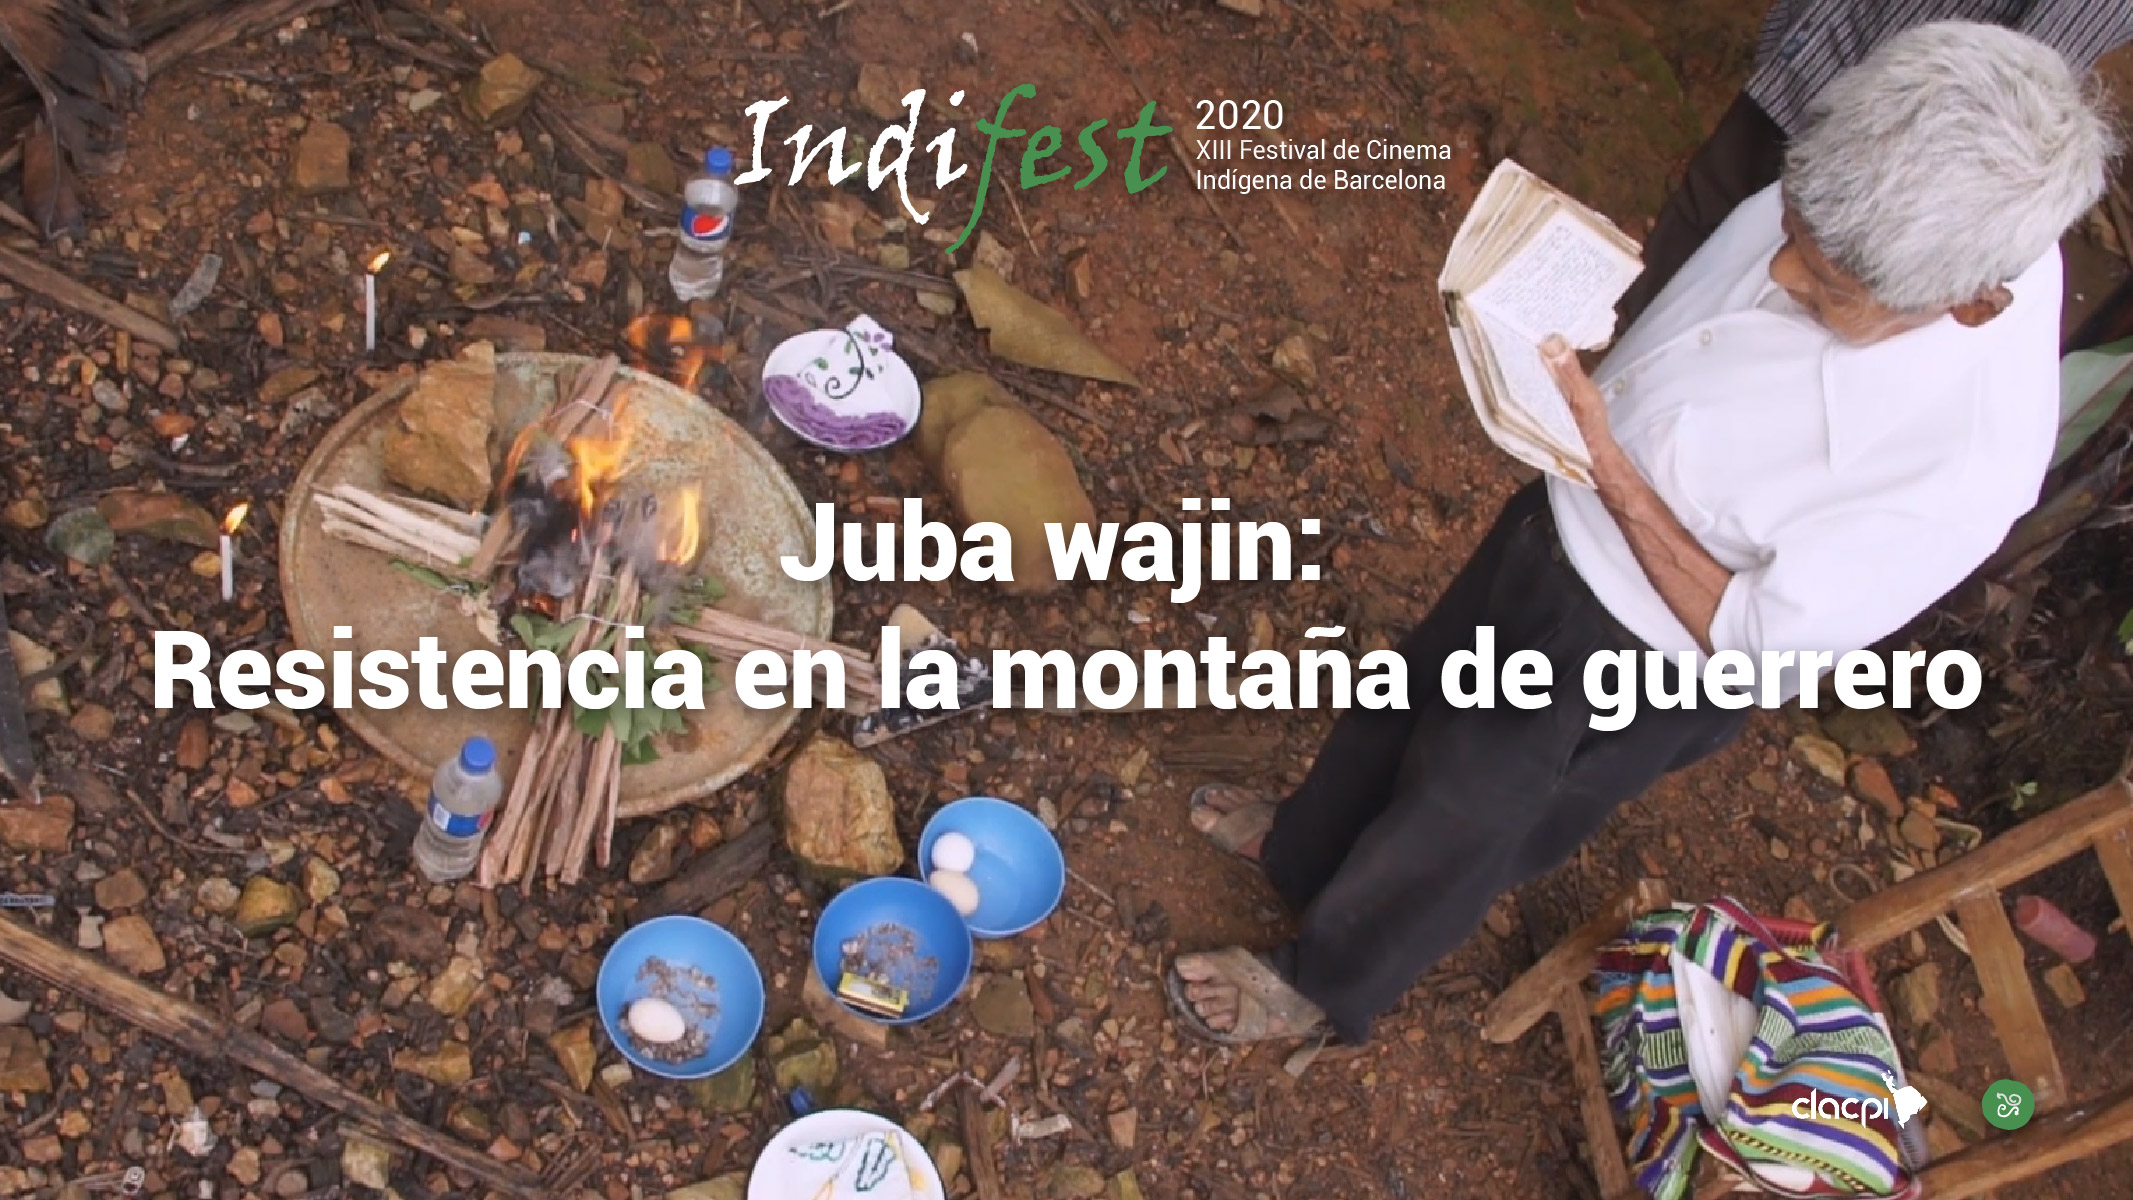 Juba wajiín: Resistencia en la montaña de guerrero cast